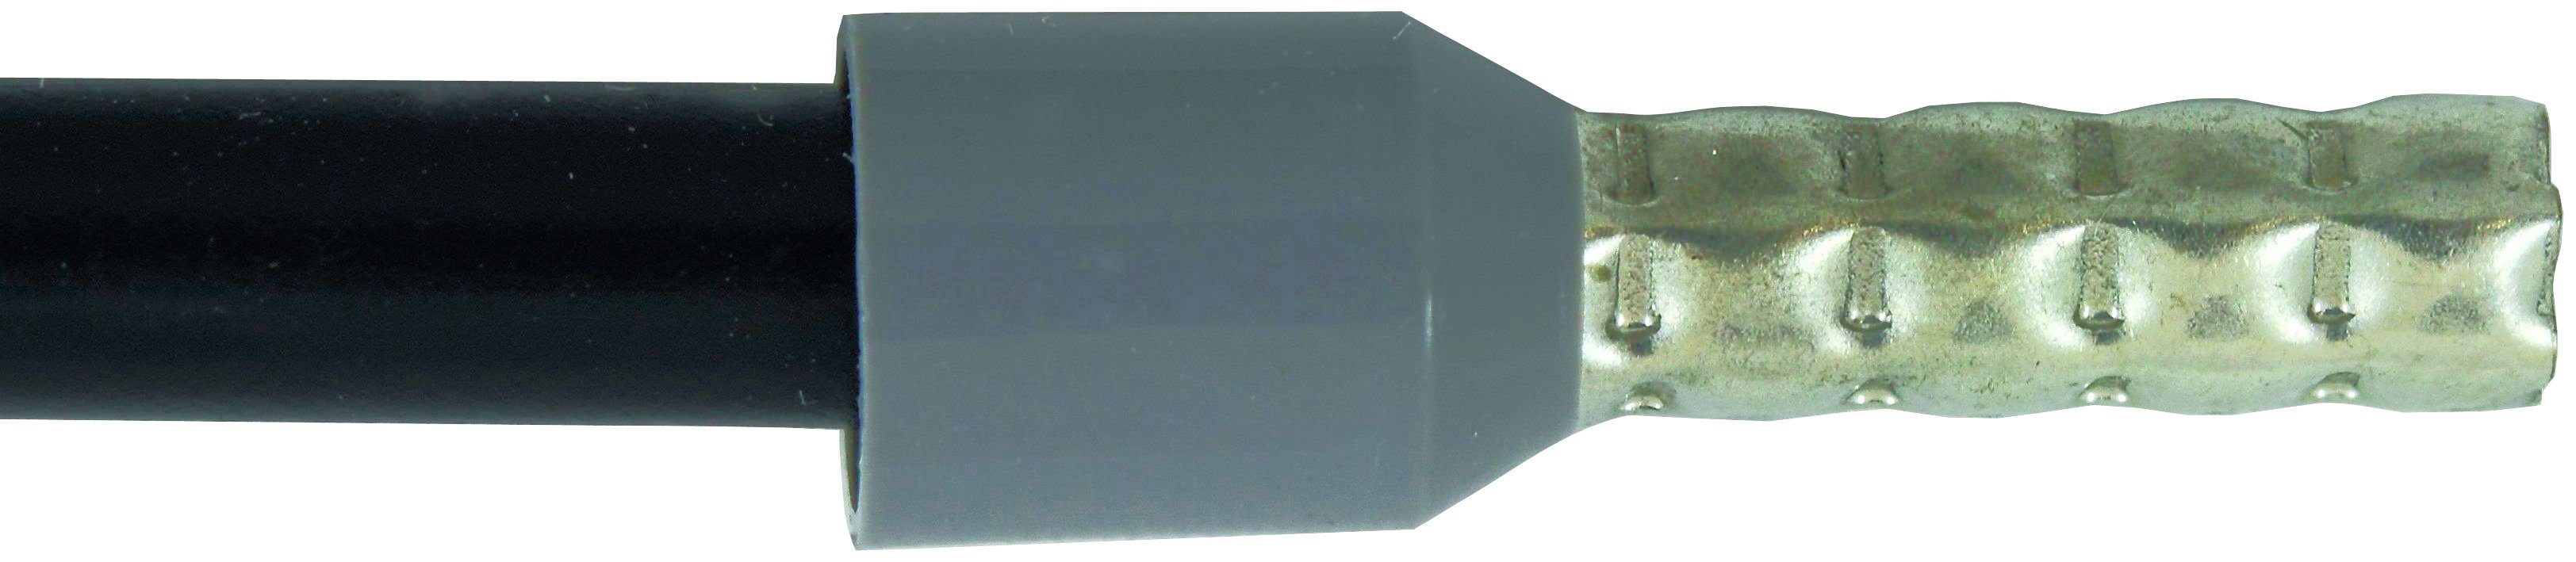 Aderendhülsen Sechskant-Pressung für Crimpzange Wiha automatisch (41246), Crimpwerkzeug 210 mm